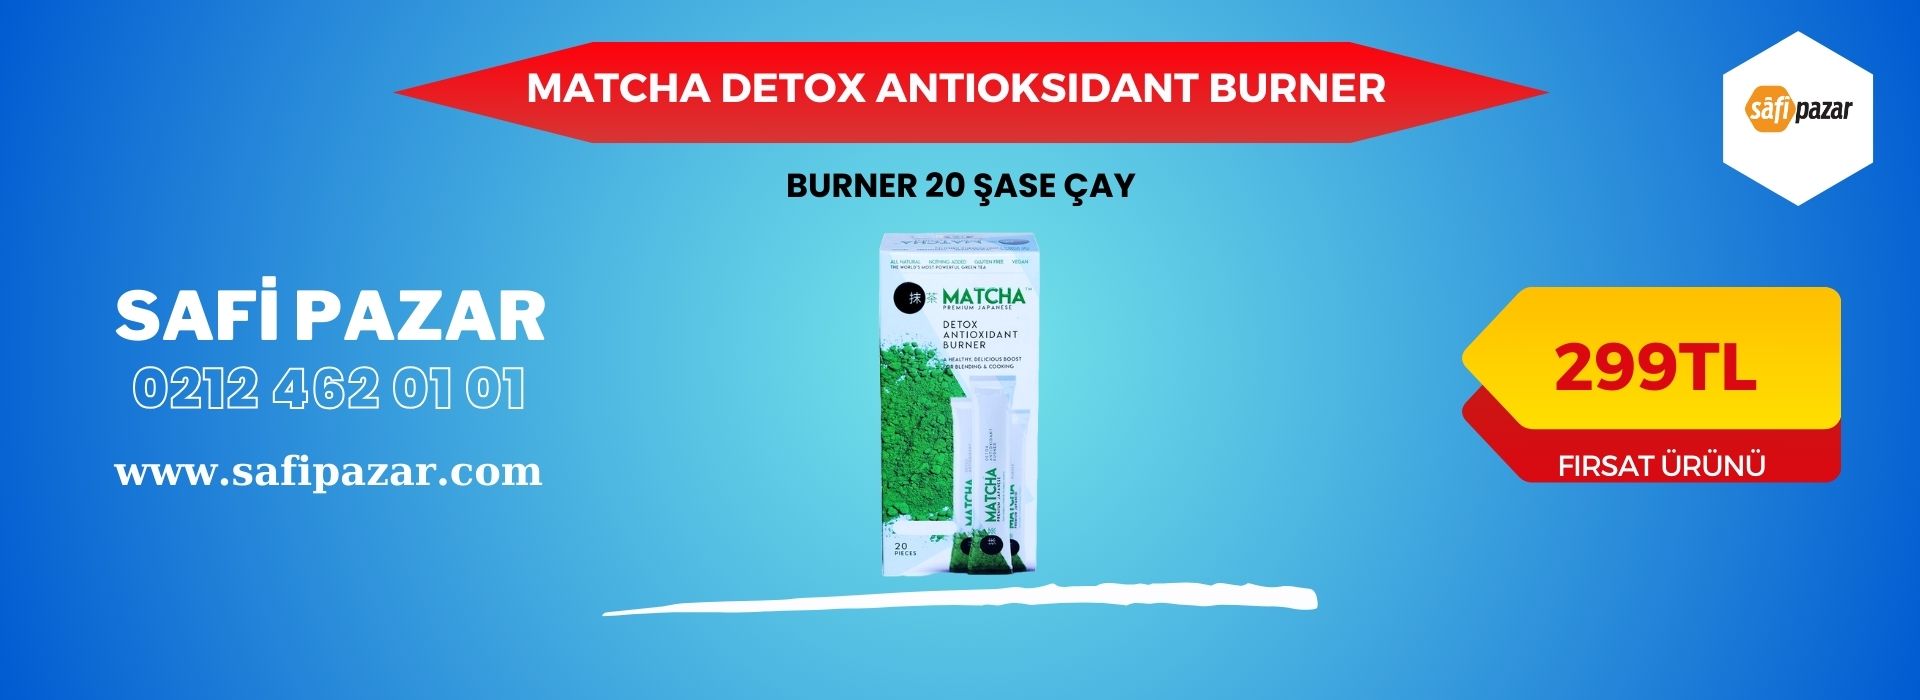 Matcha Detox Antioxidant Burner